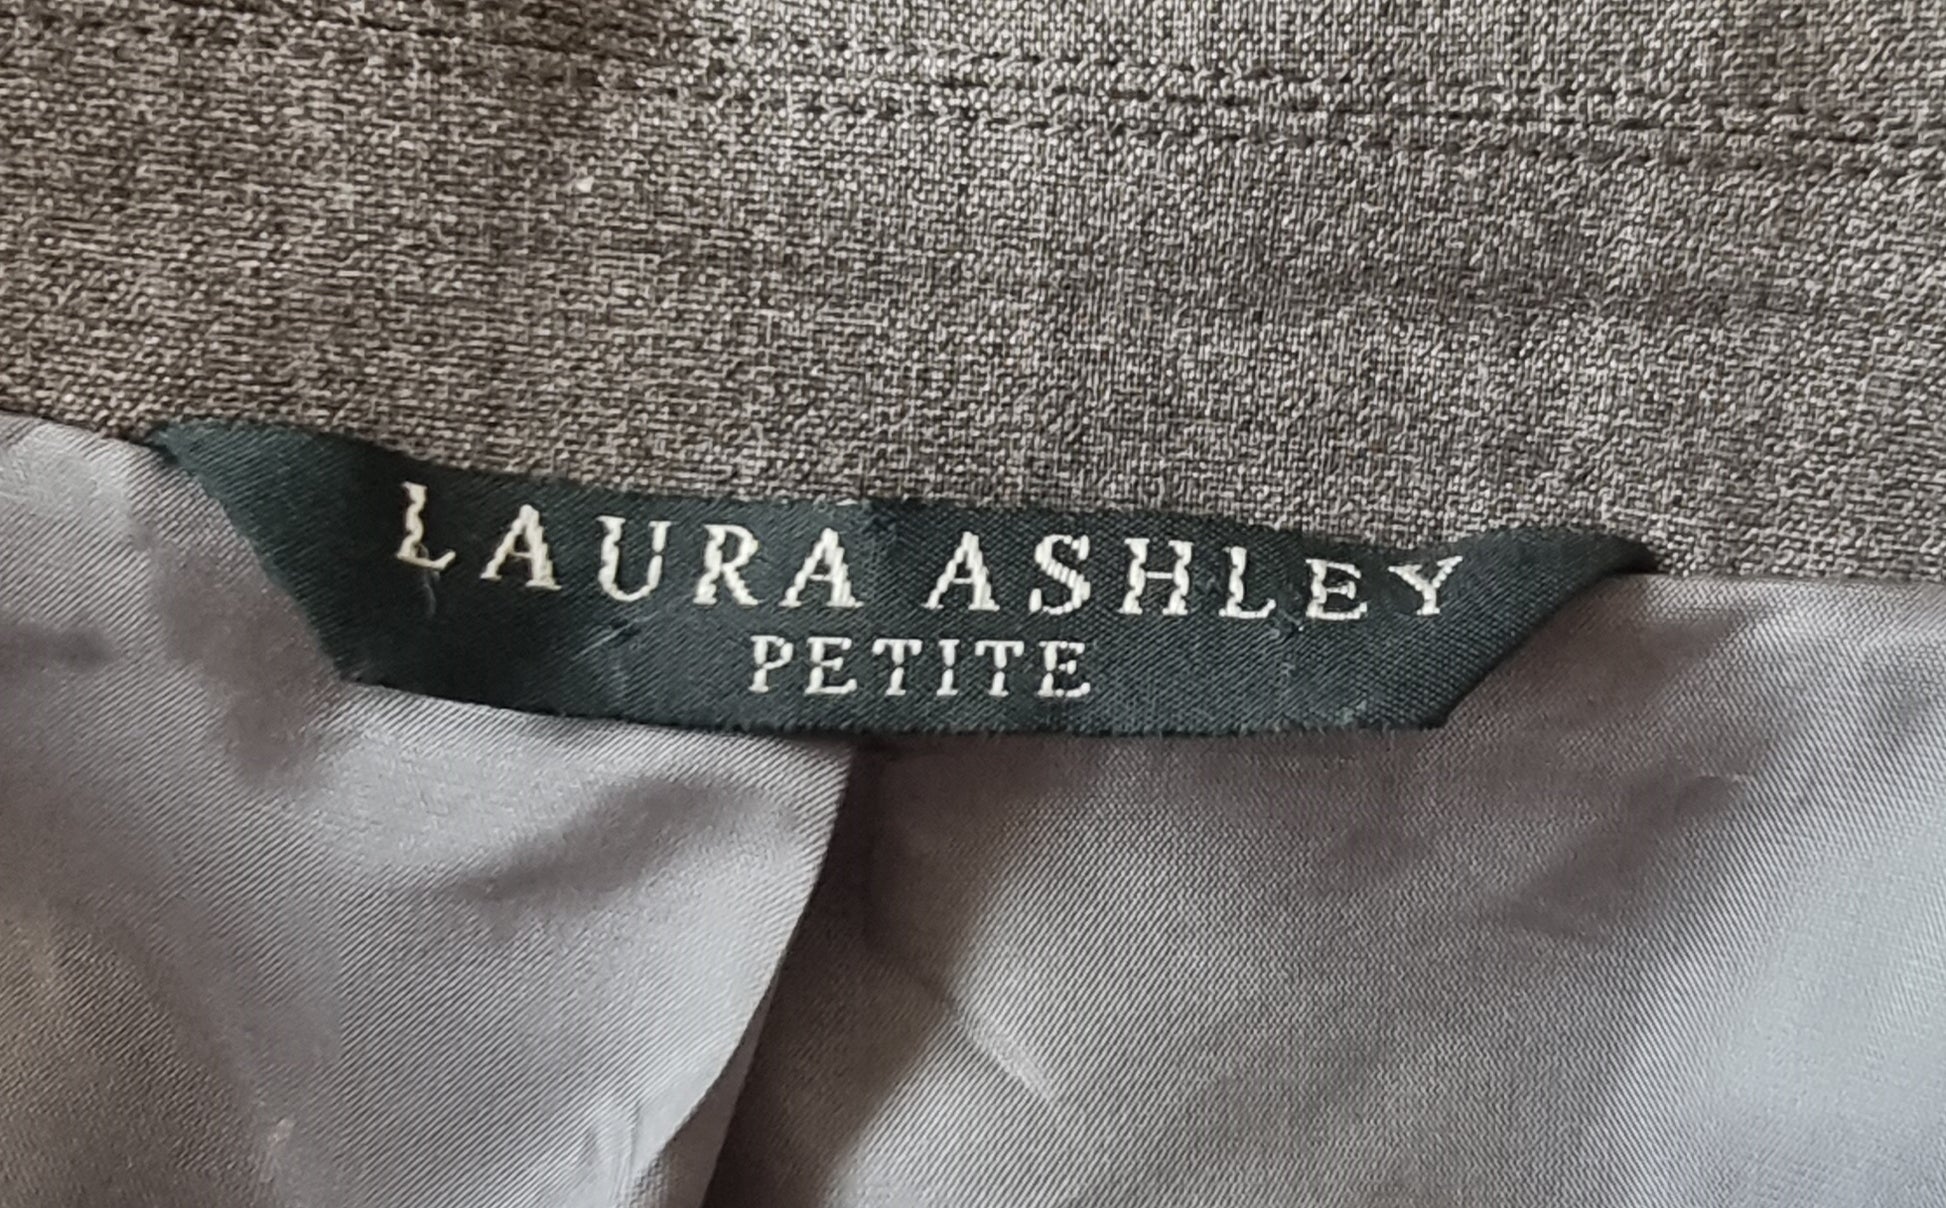 Laura Ashley Petite Grey tailored Jacket UK 12 US 8 EU 40 Timeless Fashions